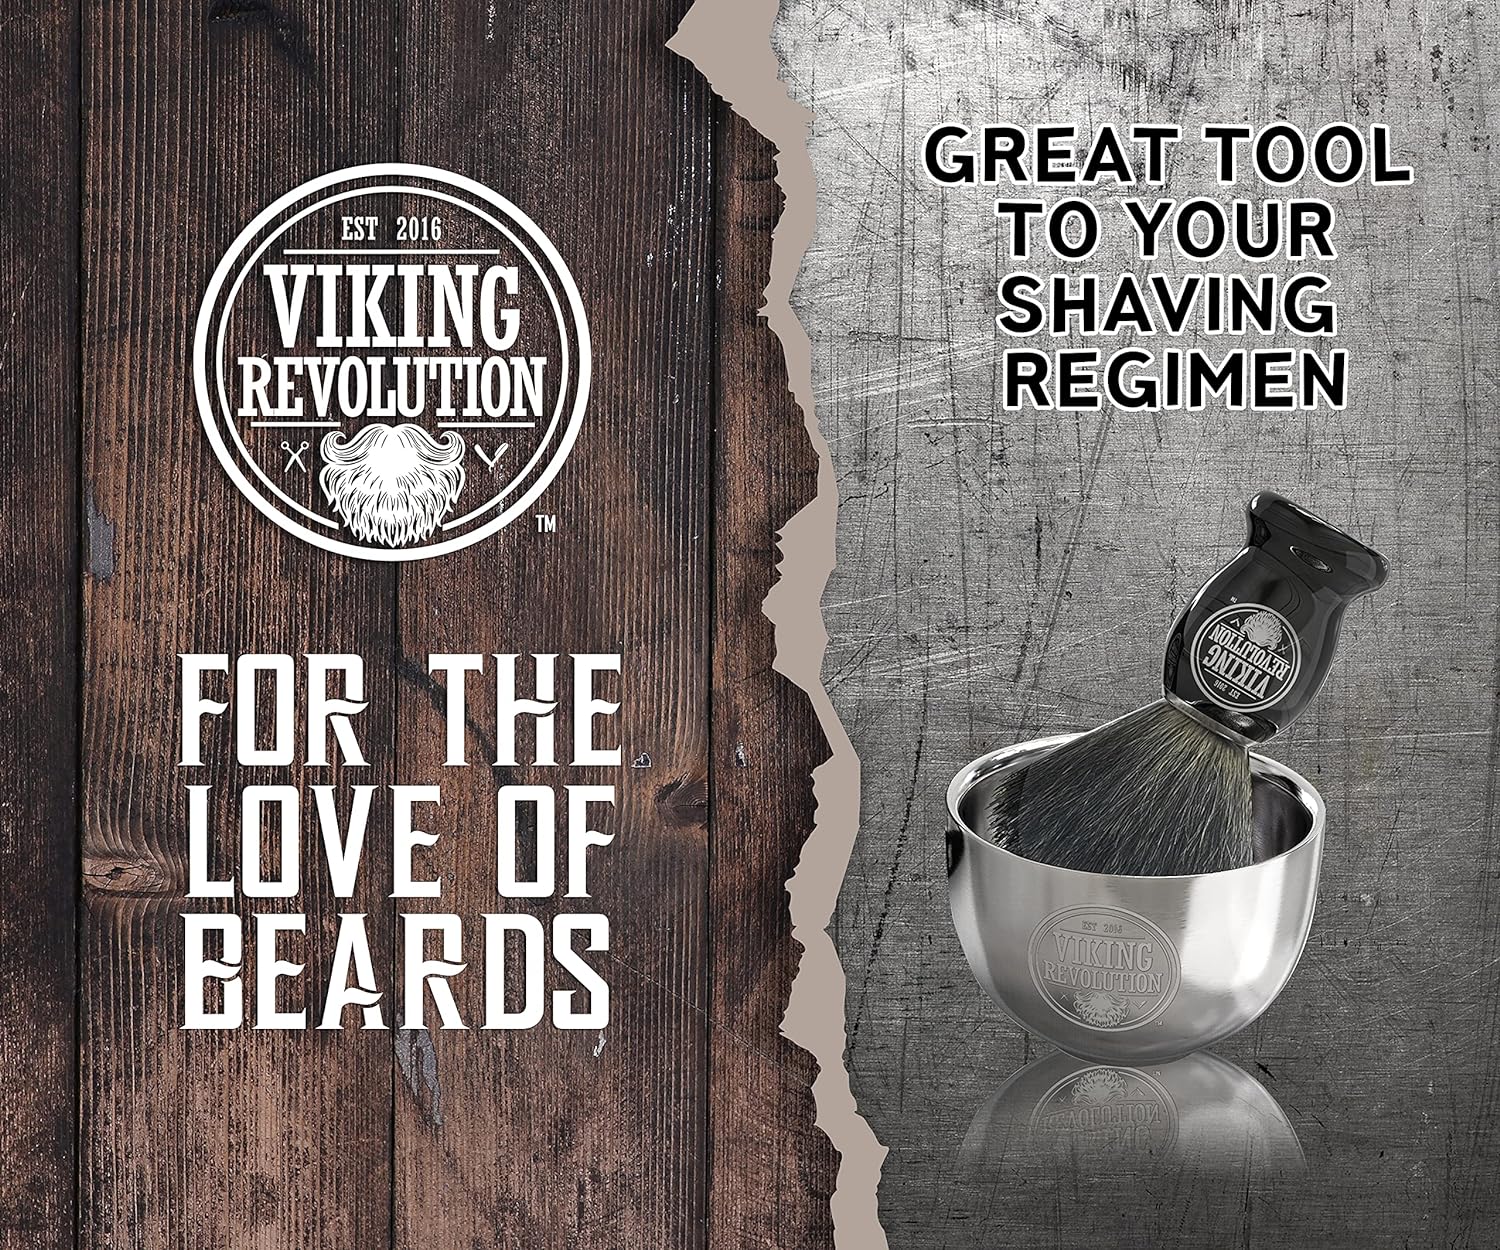 Viking Revolution Stainless Steel Shaving Soap Bowl- Shaving